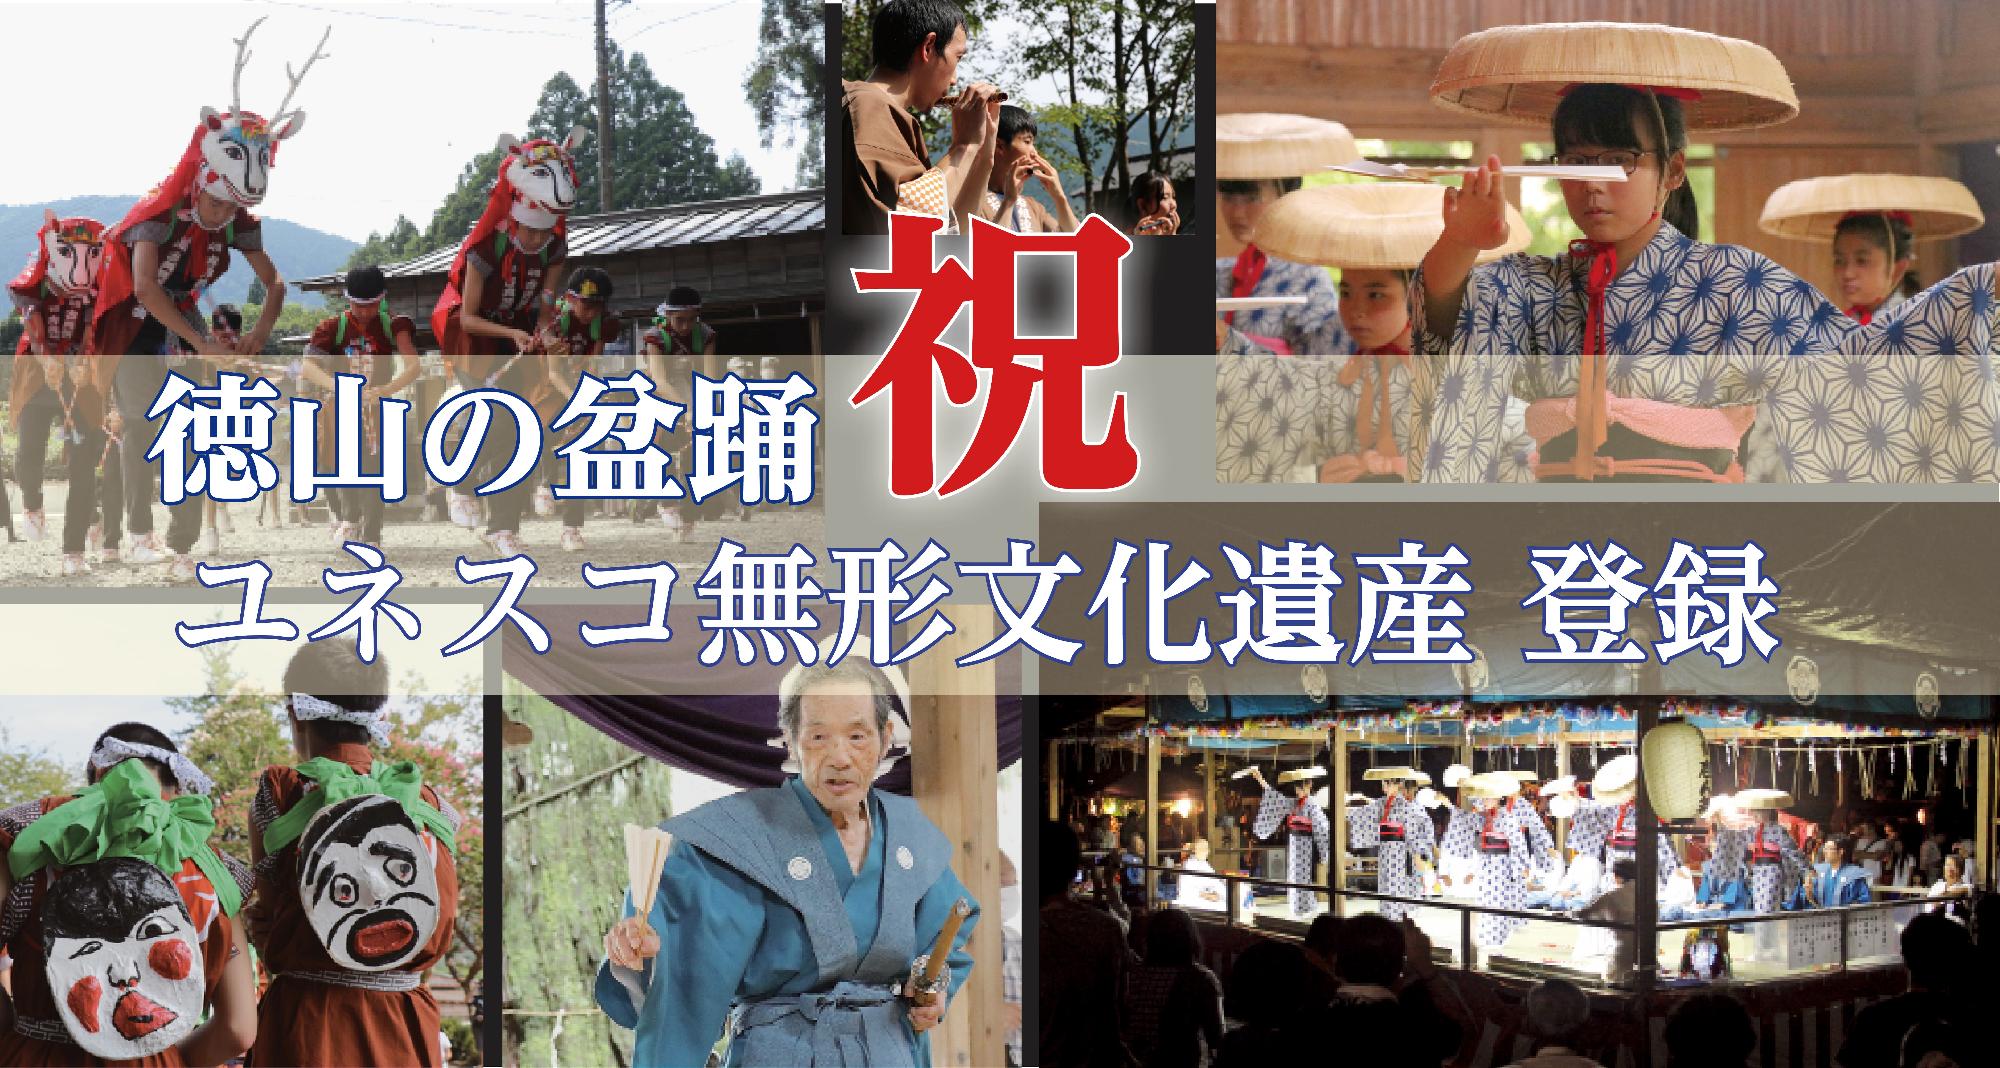 徳山の盆踊がユネスコ無形文化遺産に登録されました